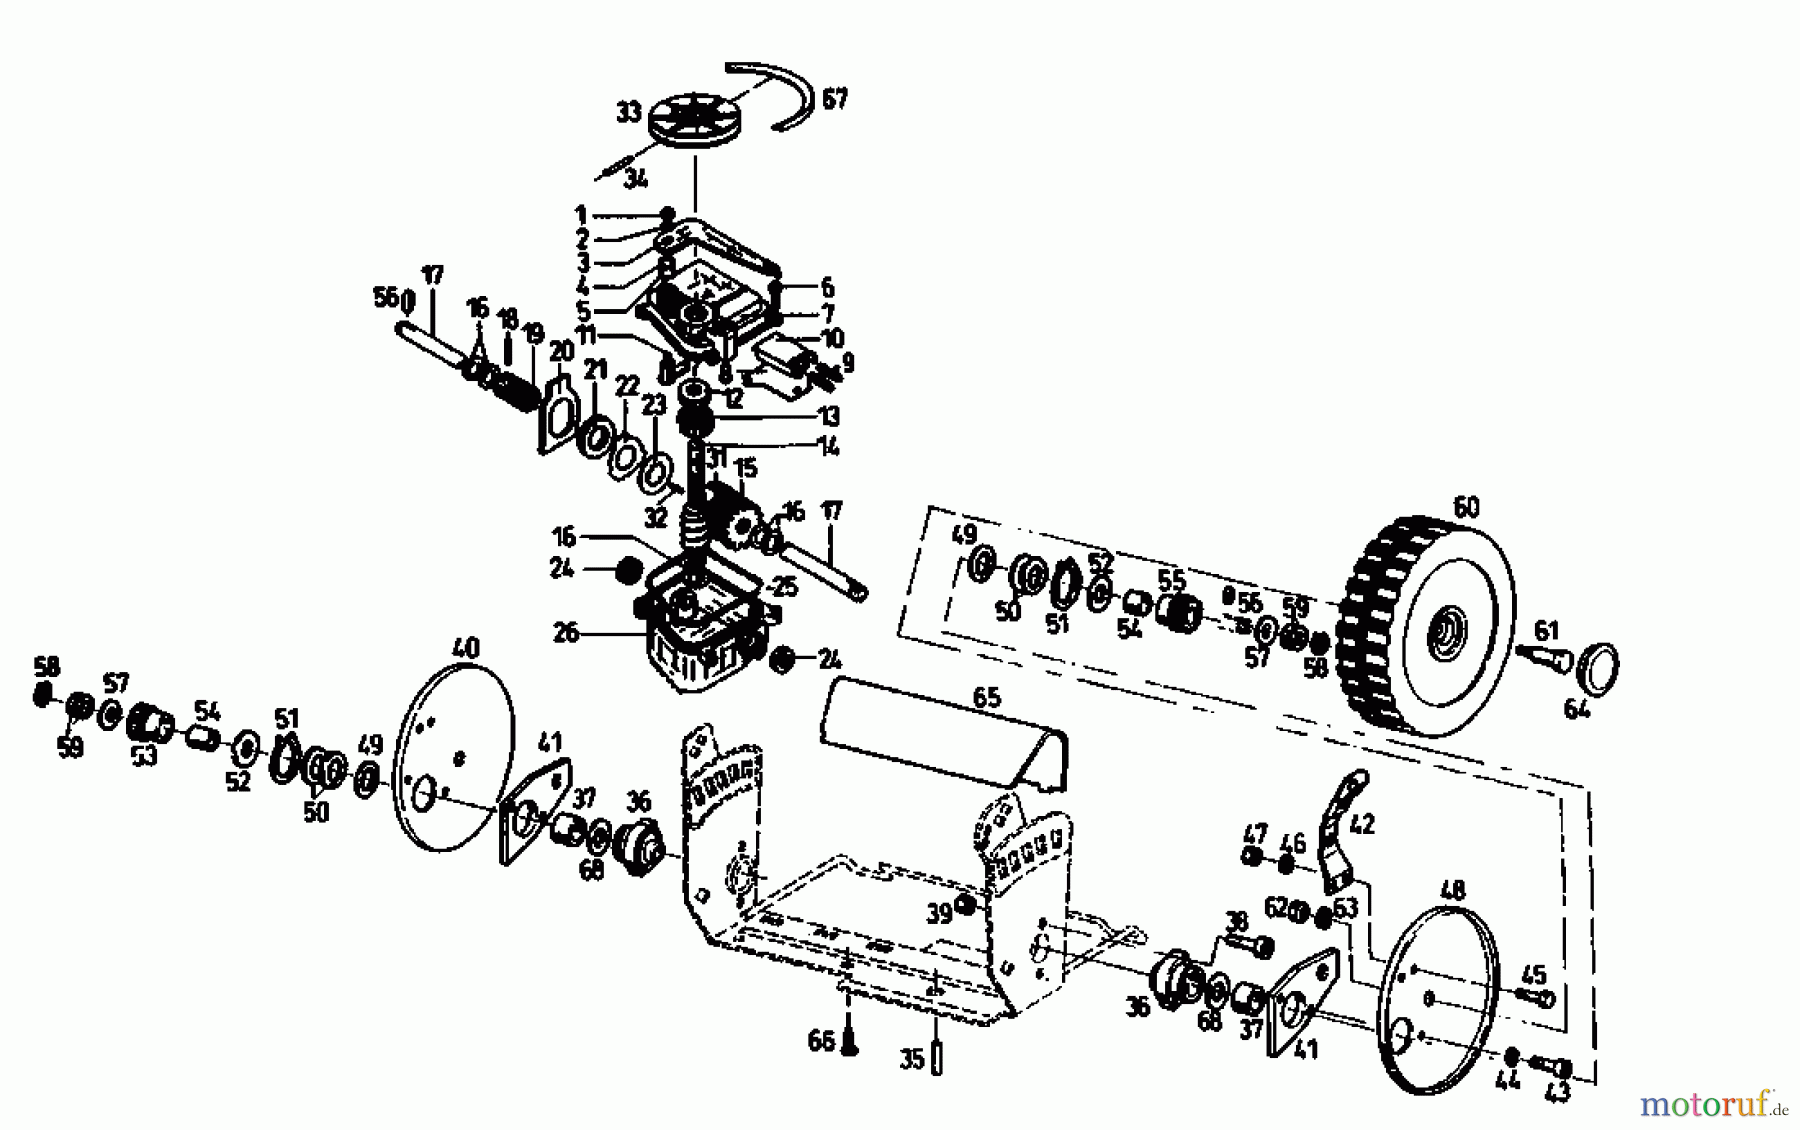  Gutbrod Petrol mower self propelled TURBO HBSRE 04011.04  (1993) Gearbox